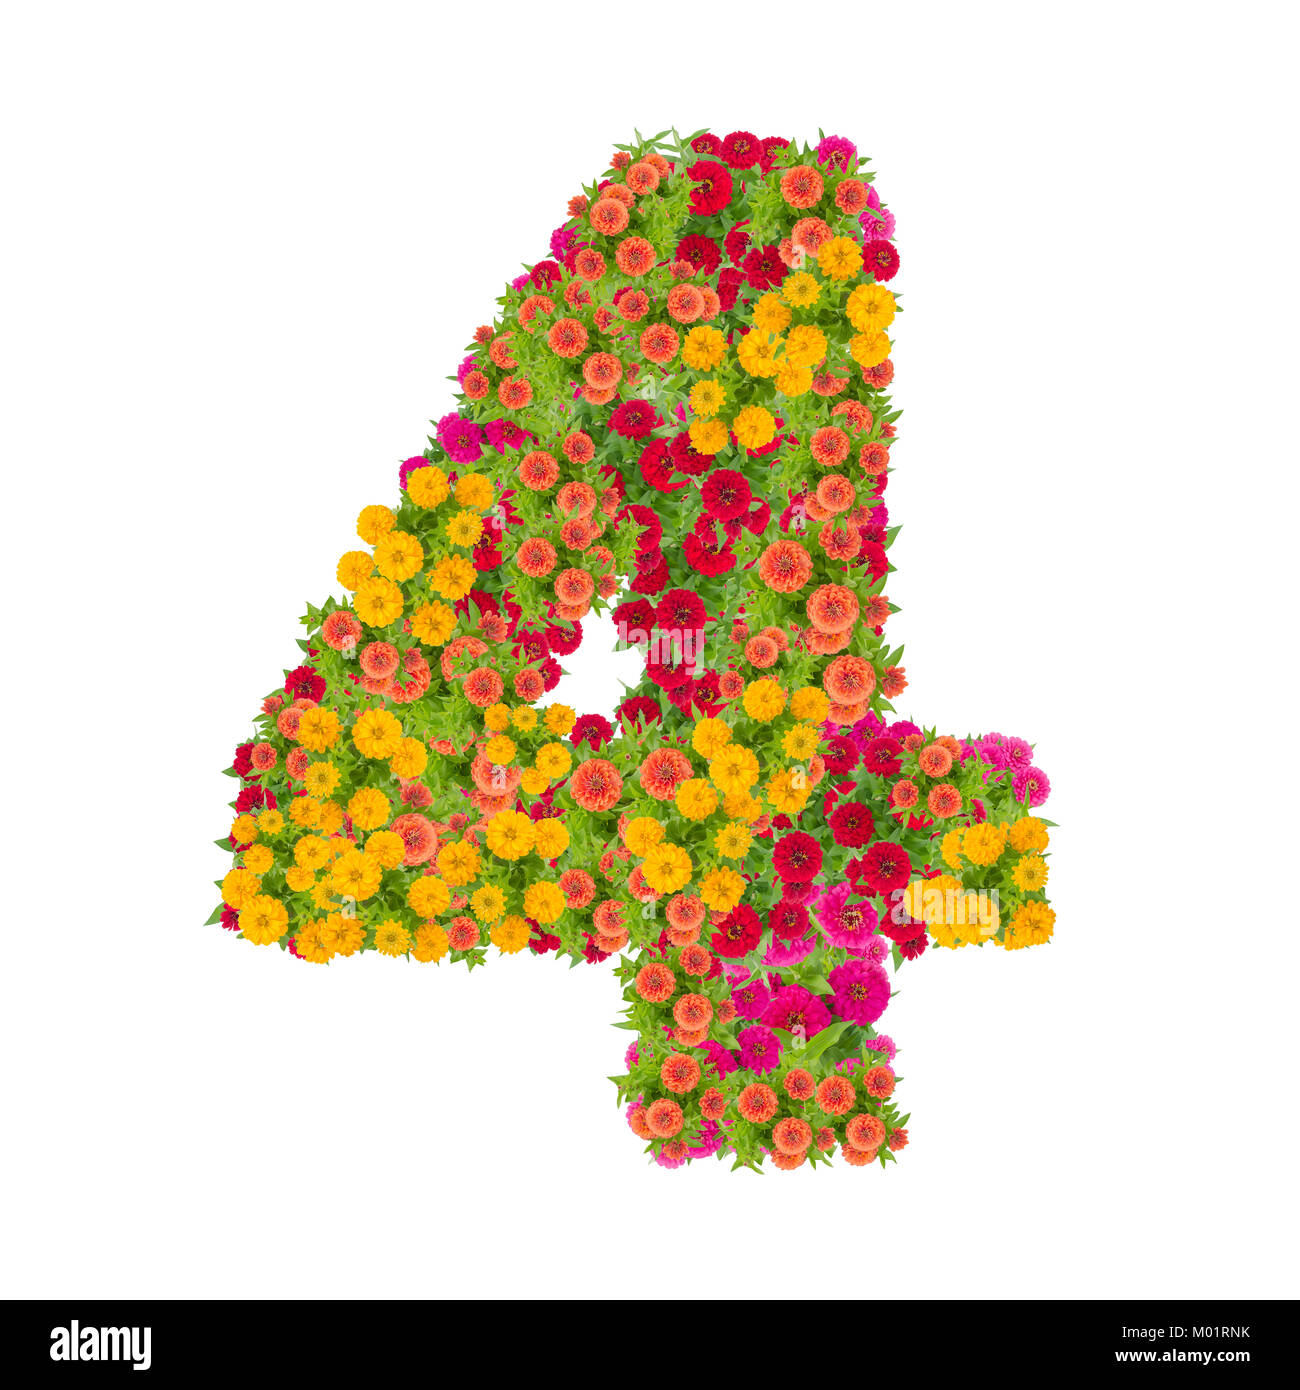 Nummer 4 von zinnien Blumen auf weißem Hintergrund gemacht. Farbenfrohe zinnia Blume in Nummer vier Form mit Freistellungspfad Stockfoto